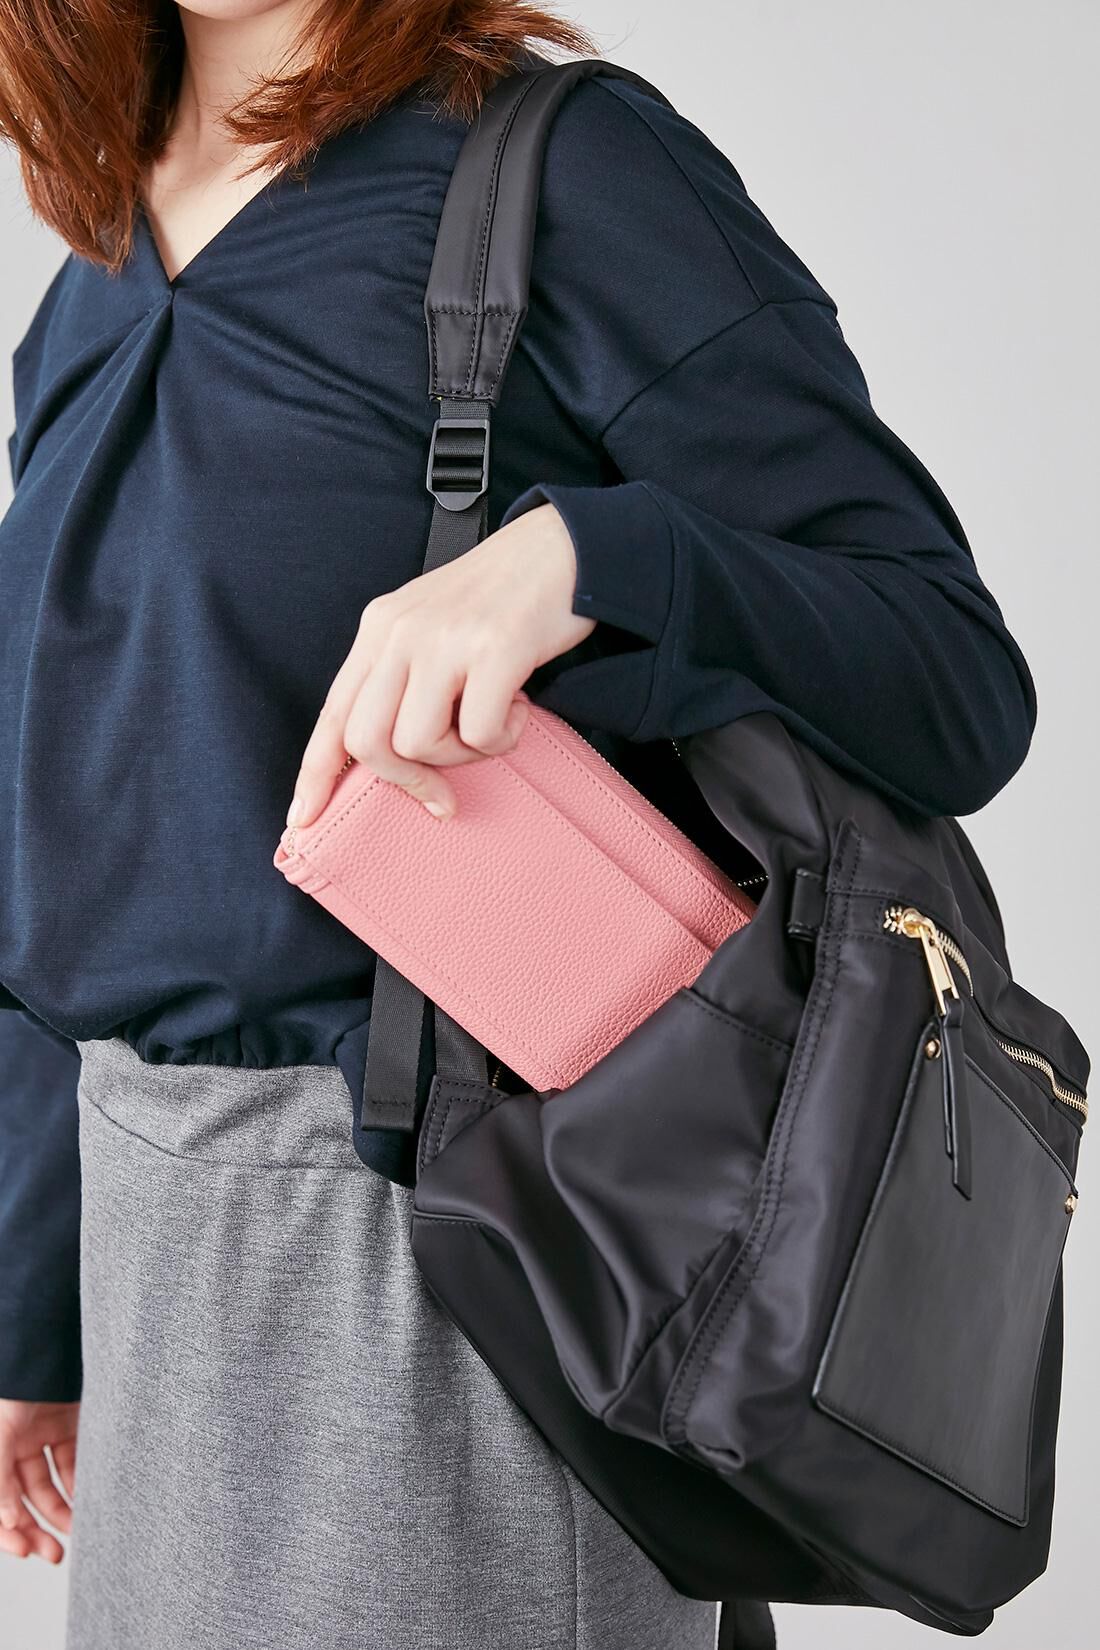 IEDIT[イディット]ワガママ企画　通勤にうれしい安心機能が盛りだくさん！ きれいめ大人リュック〈ブラック〉|背負ったまま、背中側のファスナーから財布などを取り出せます。